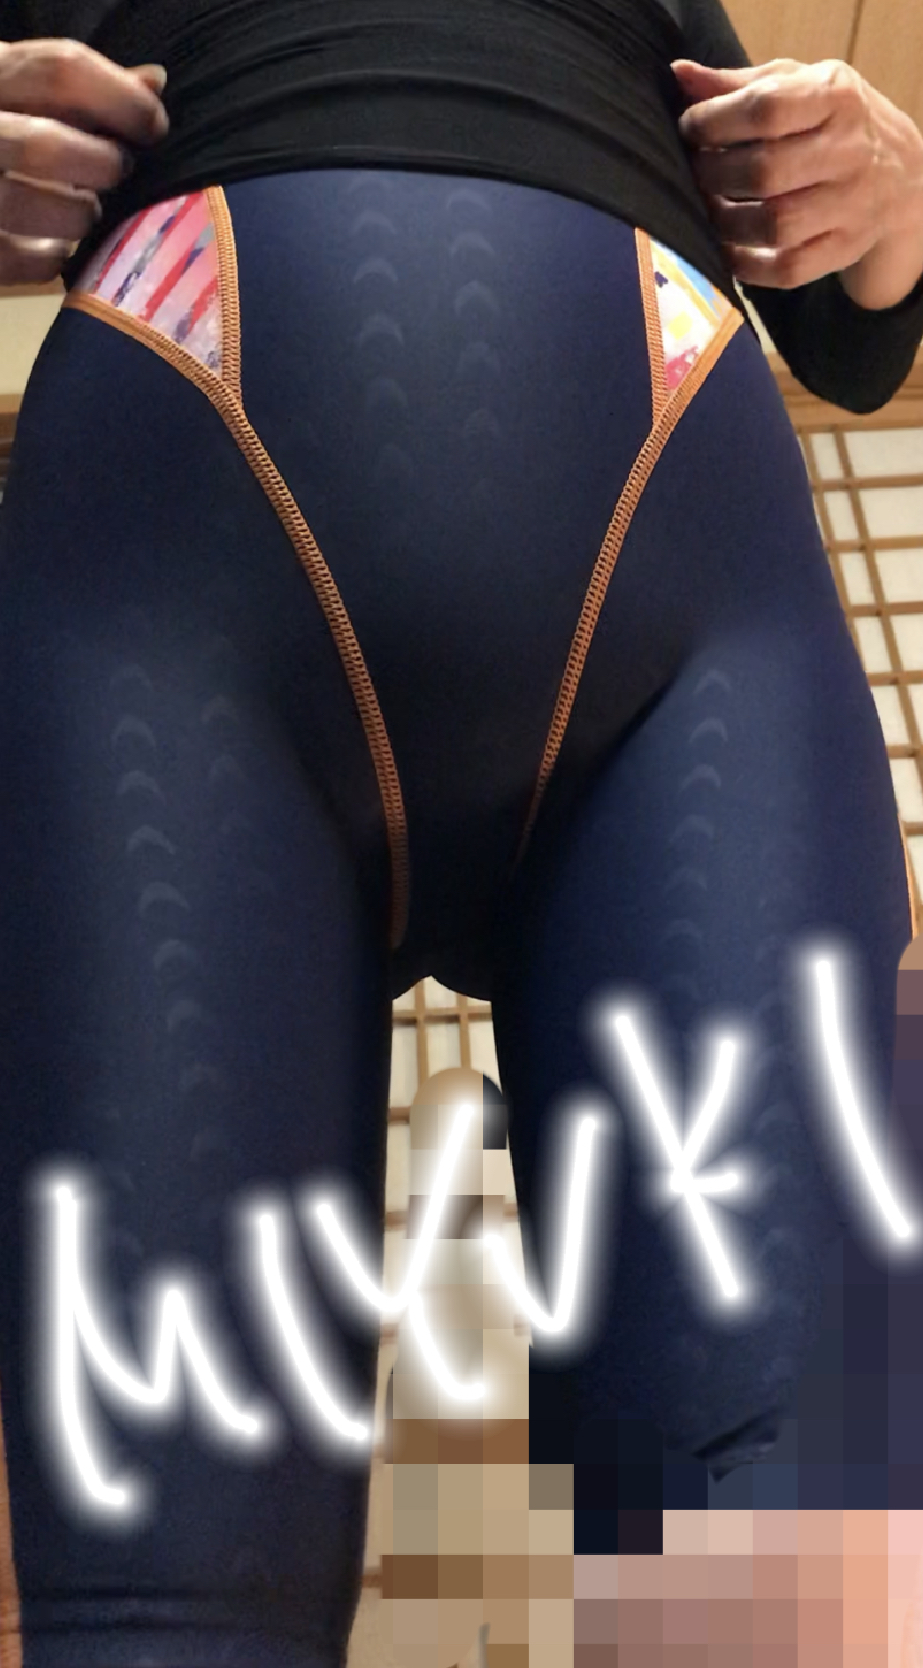 スパッツ競泳水着画像掲示板へ投稿されたMIYUKI様のスパッツ競泳水着画像 No.15914237380010